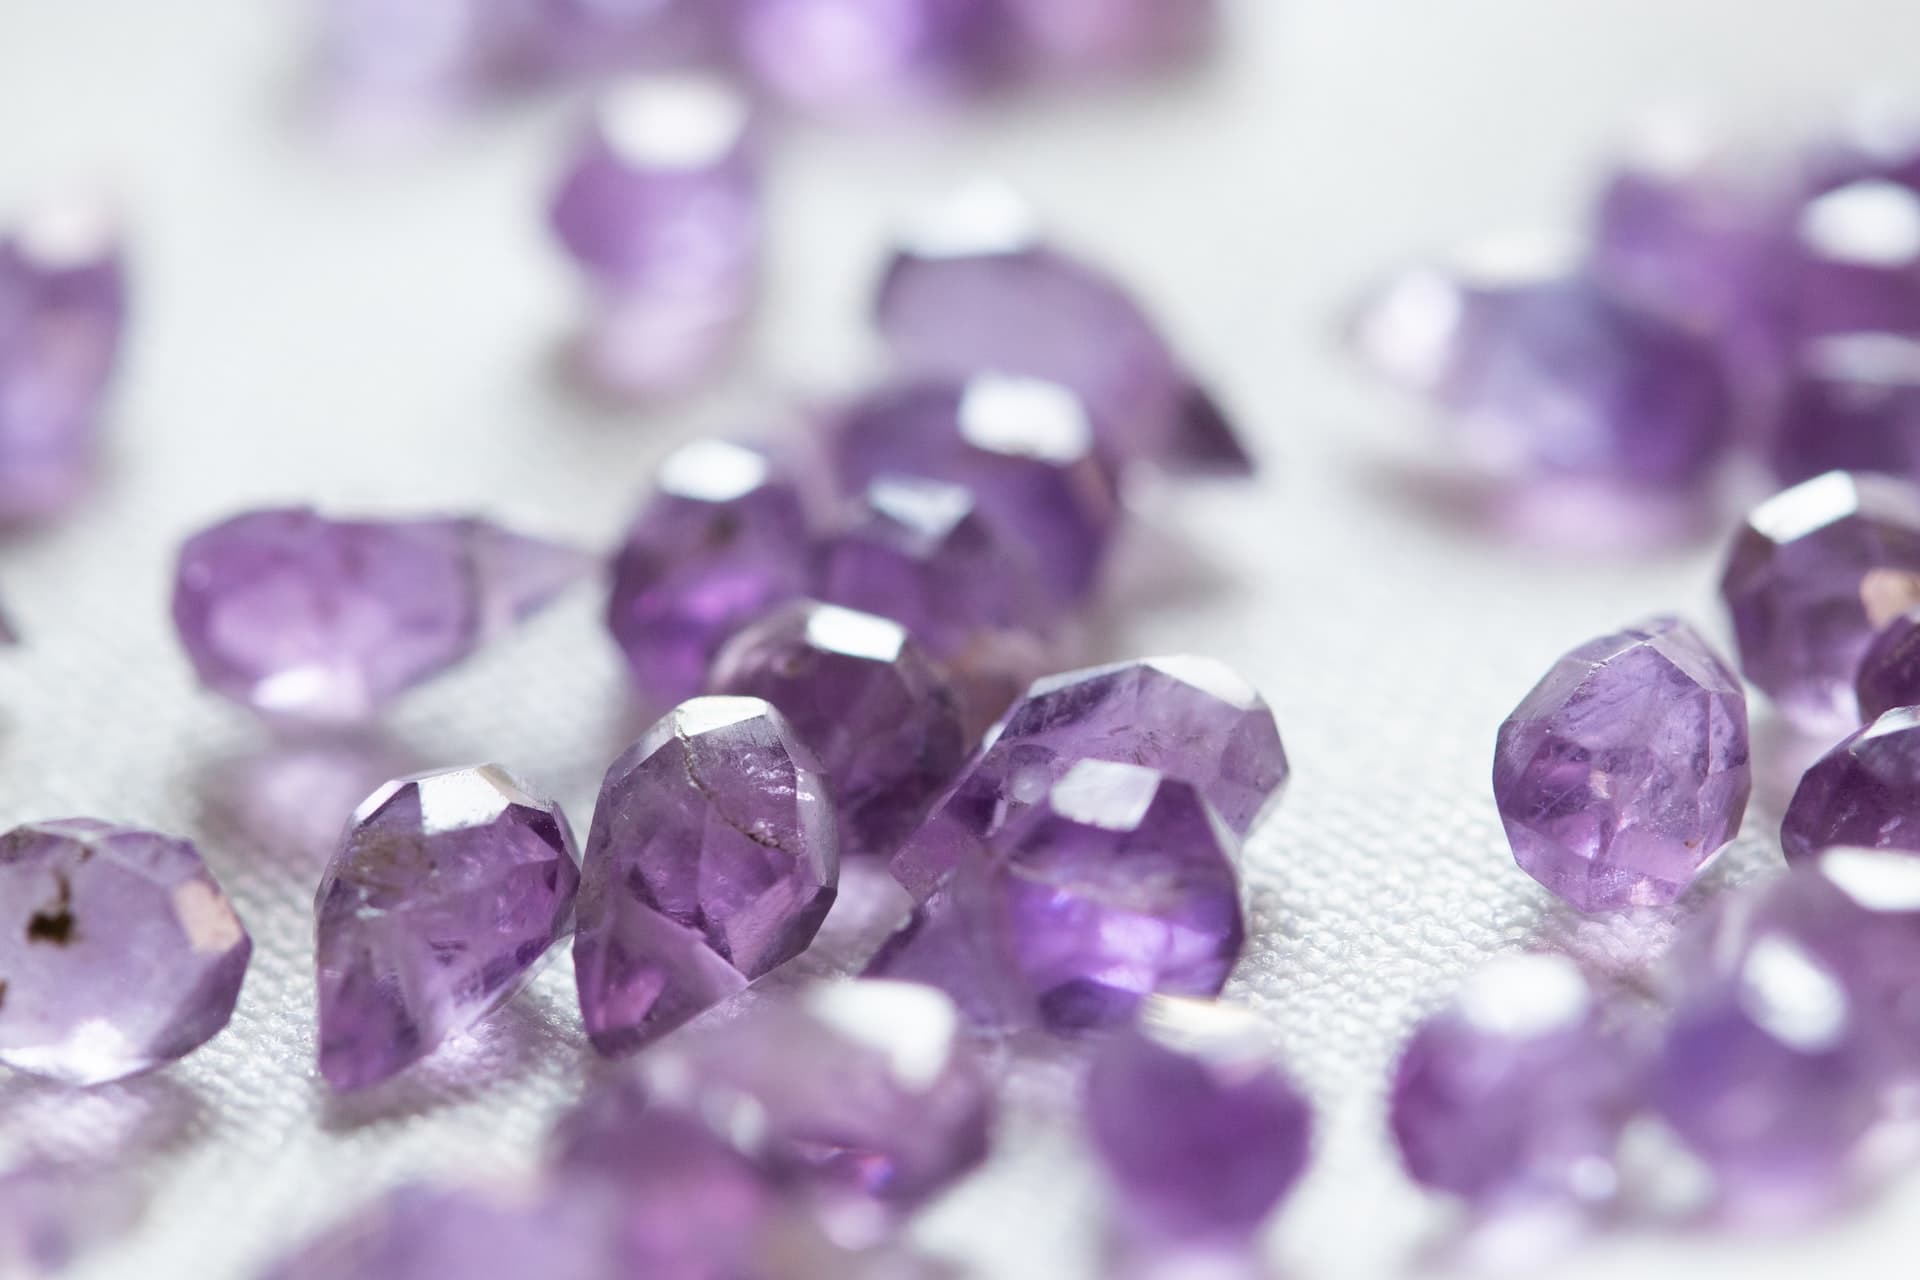 Moc minerałów – na jakie kamienie dobrze jest postawić w biżuterii?